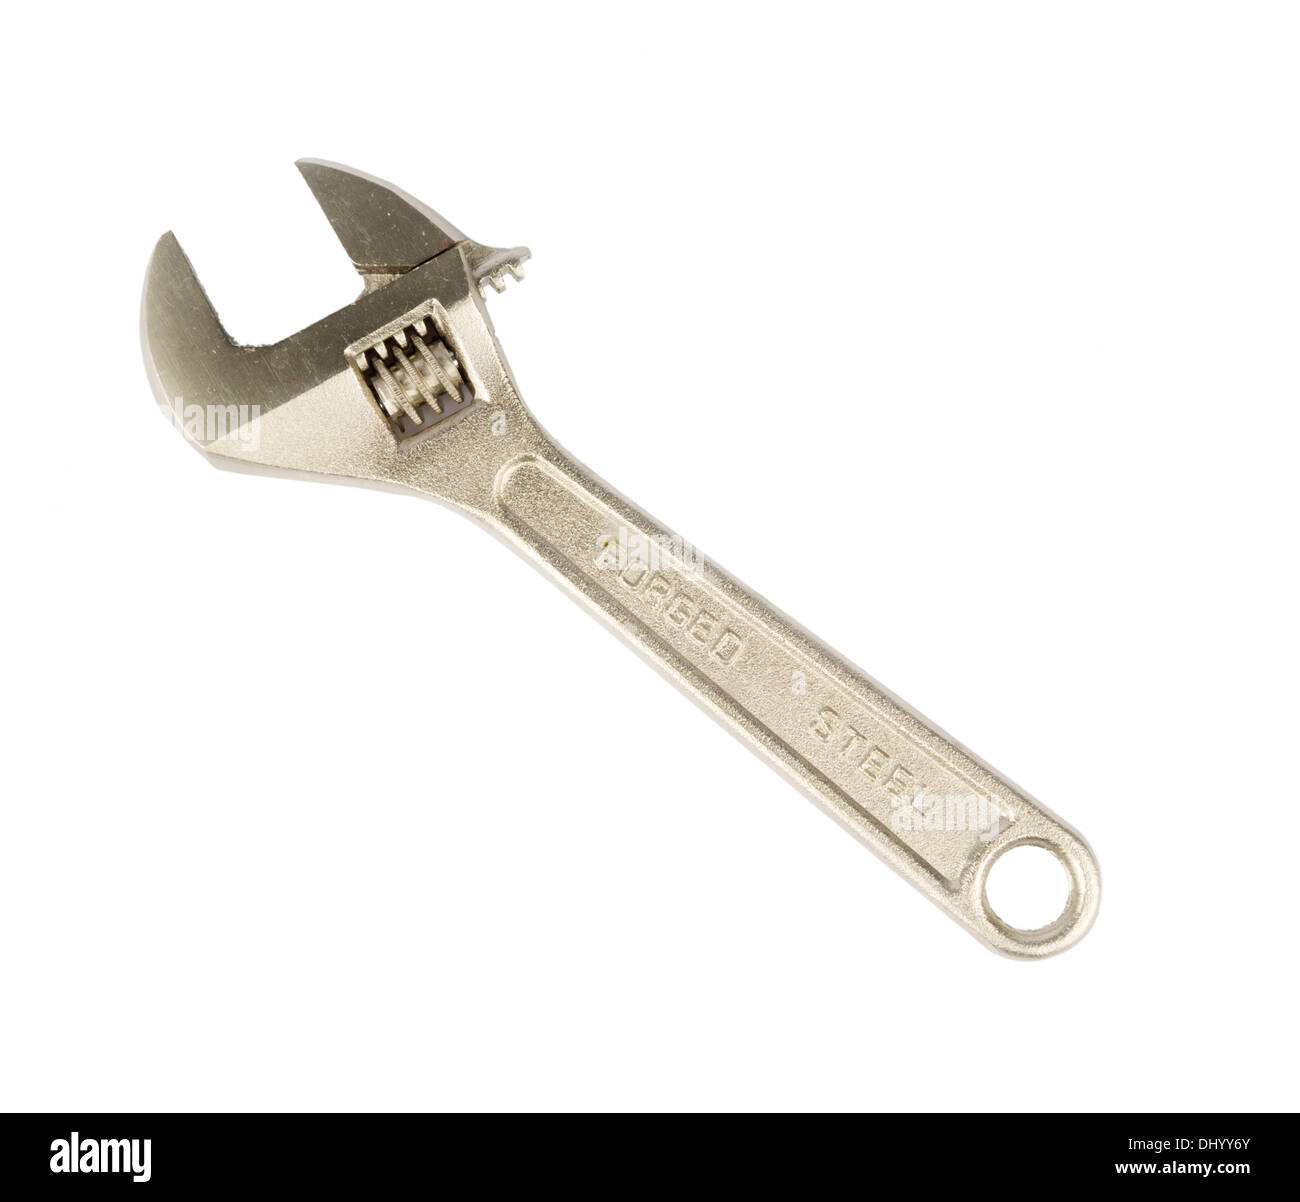 In acciaio forgiato Monkey Wrench (chiave) intaglio isolato su sfondo bianco Foto Stock